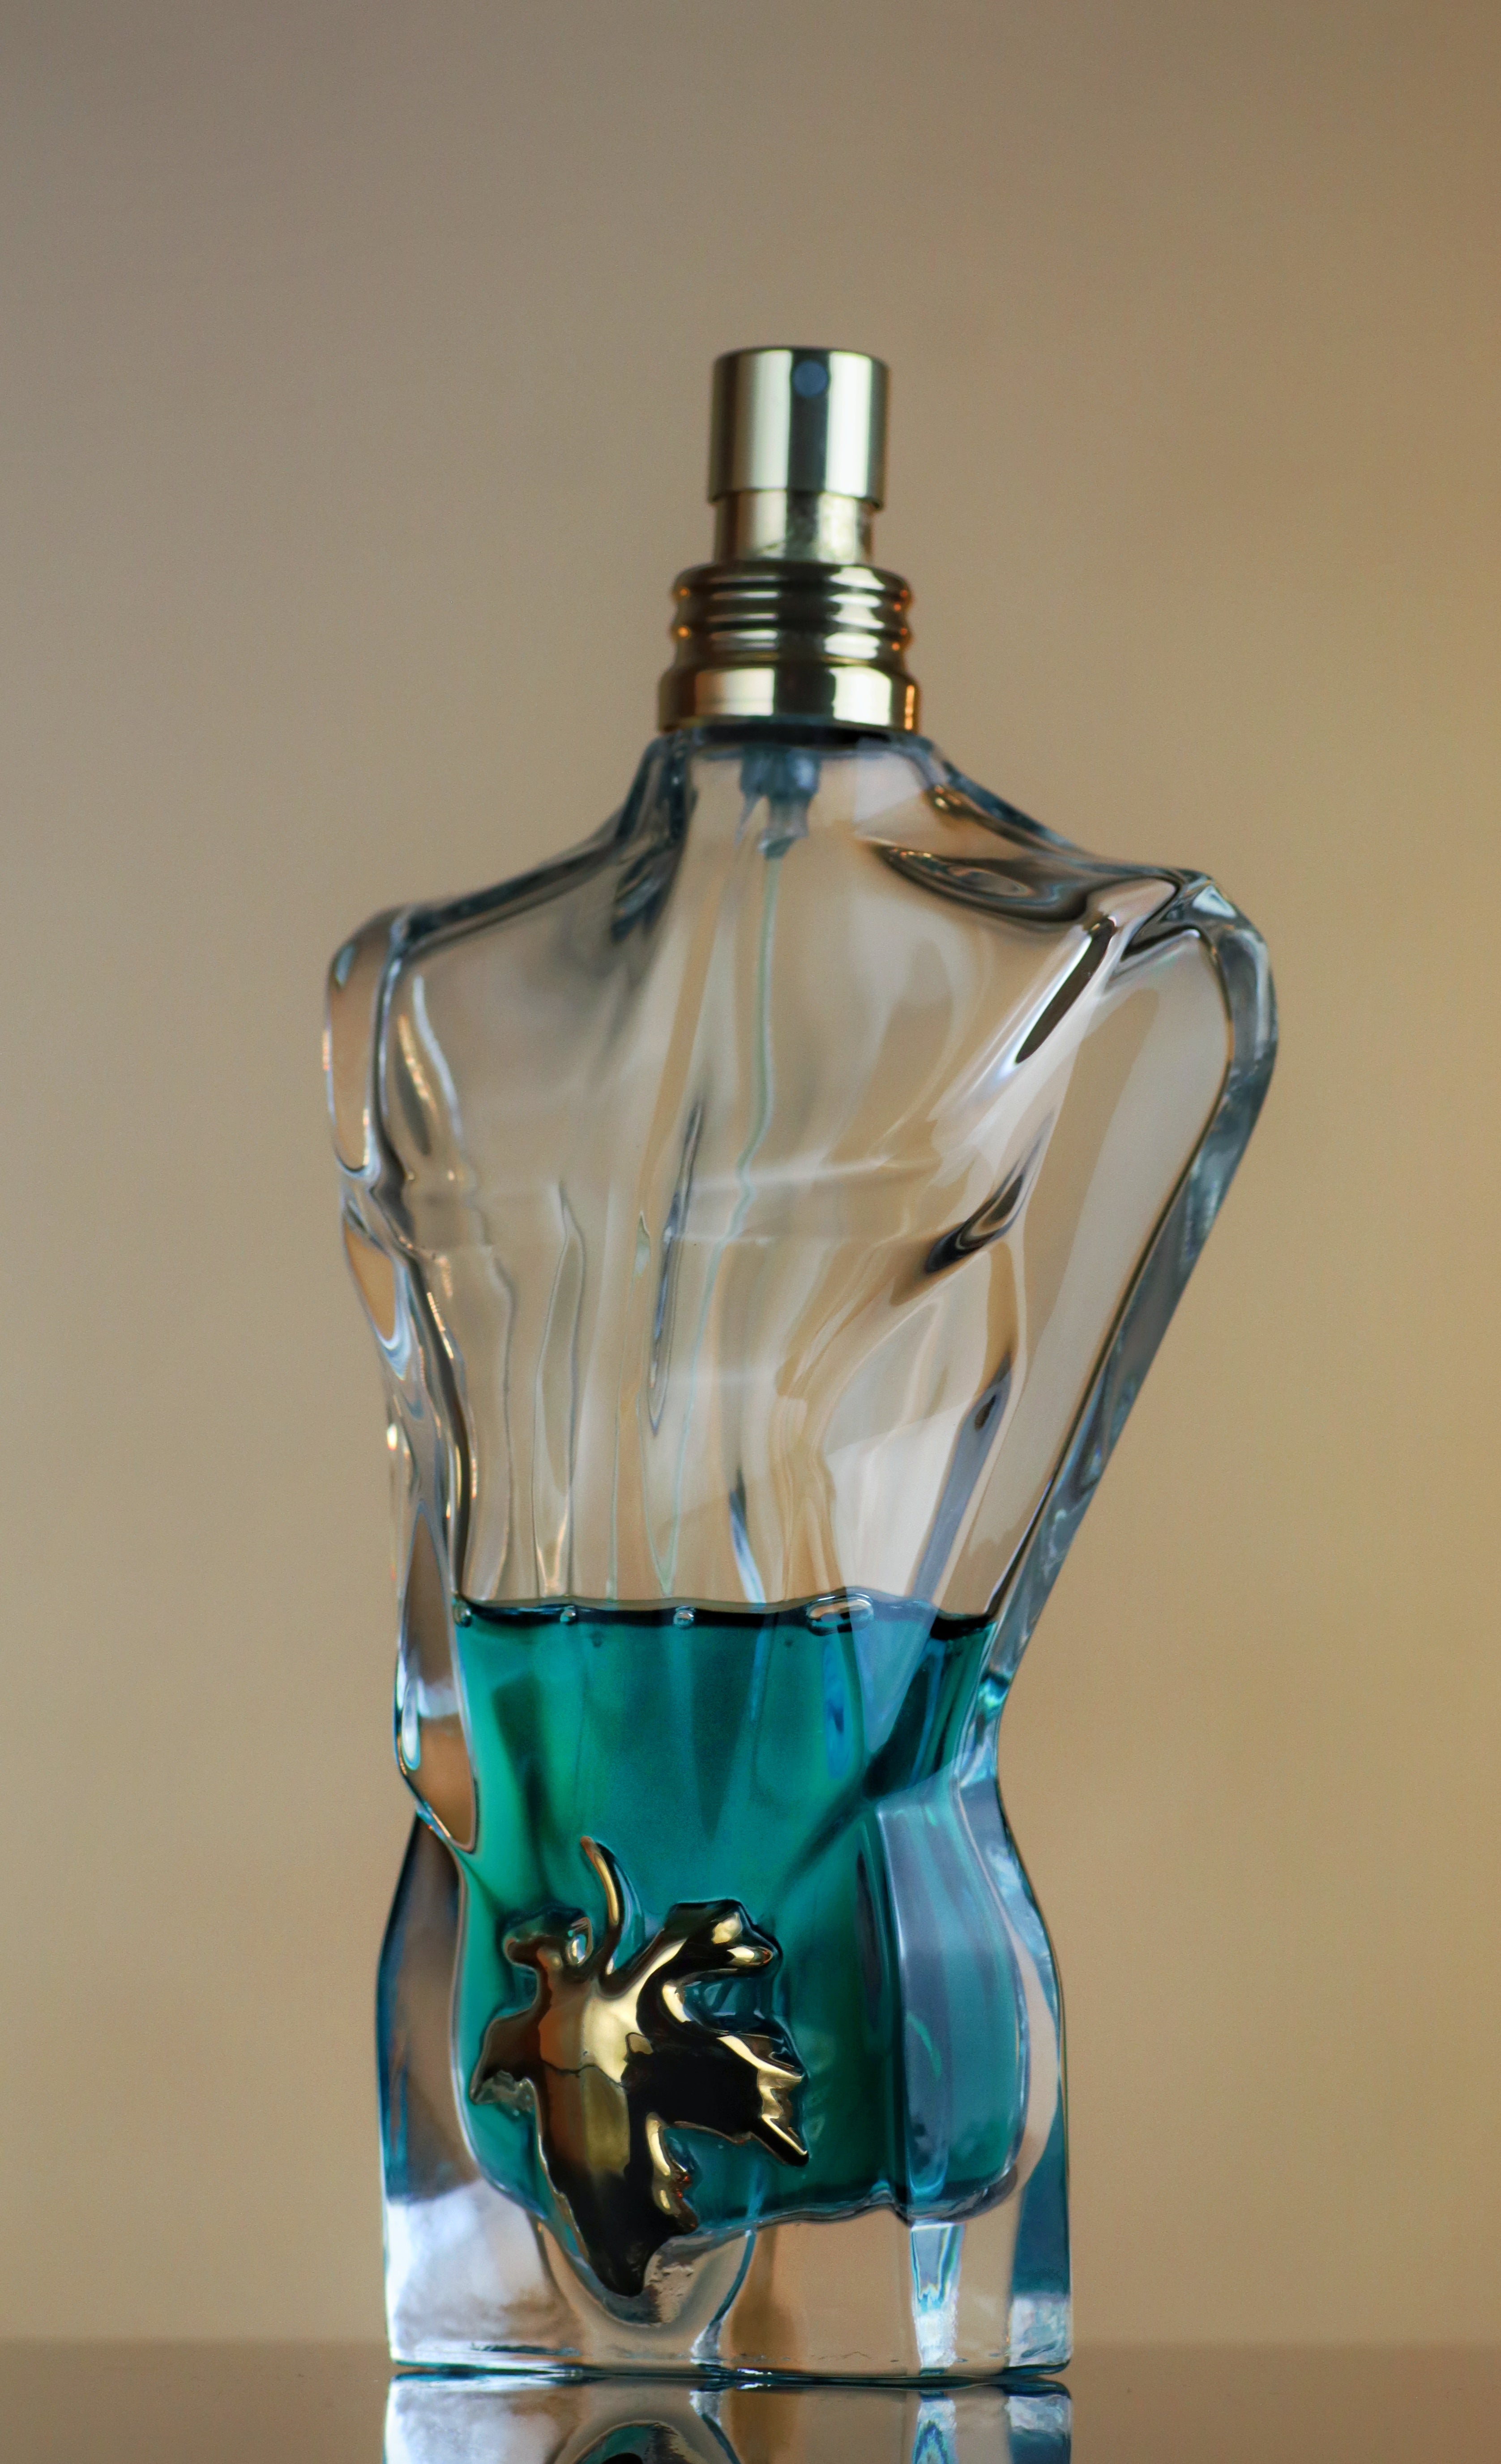 Jean Paul Gaultier Le Beau Le Parfum - Cologne Sample – MicroScents